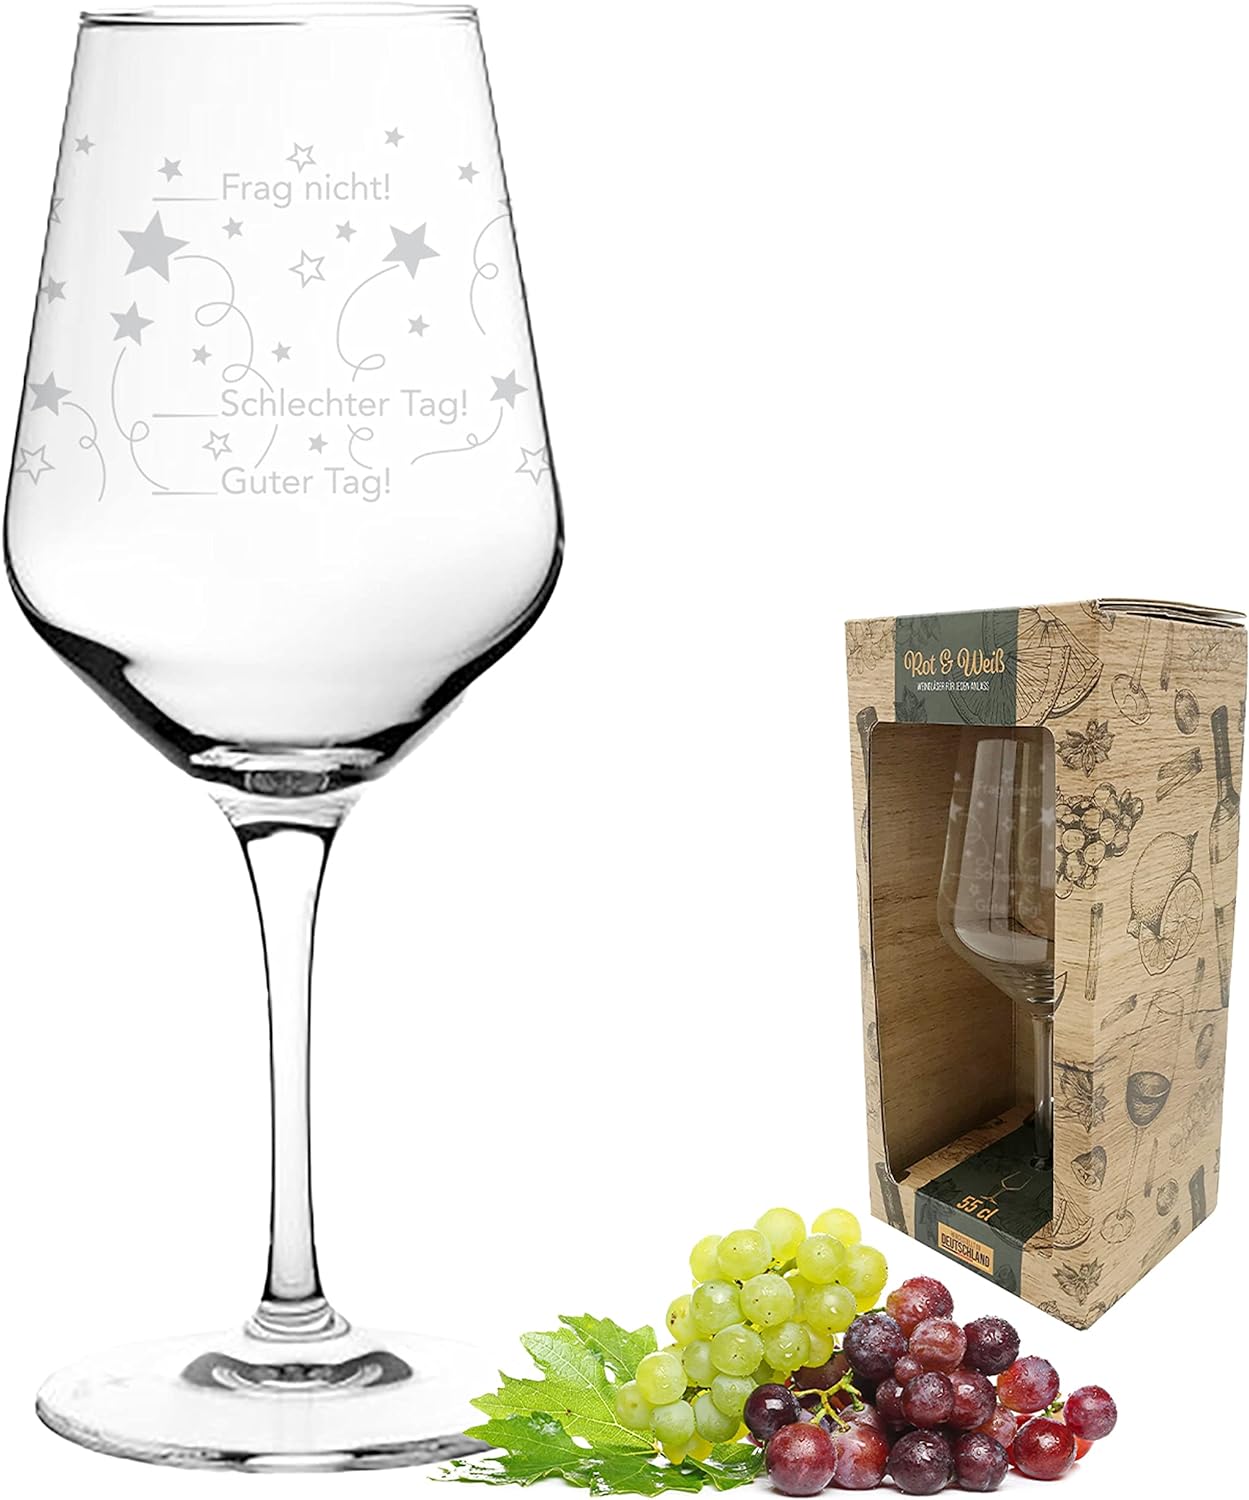 Kristall-Weinglas-550ml-Guter-Tag/Schlechter-Tag-inklusive-Geschenkbox-berlindeluxe-trauben-weinglas